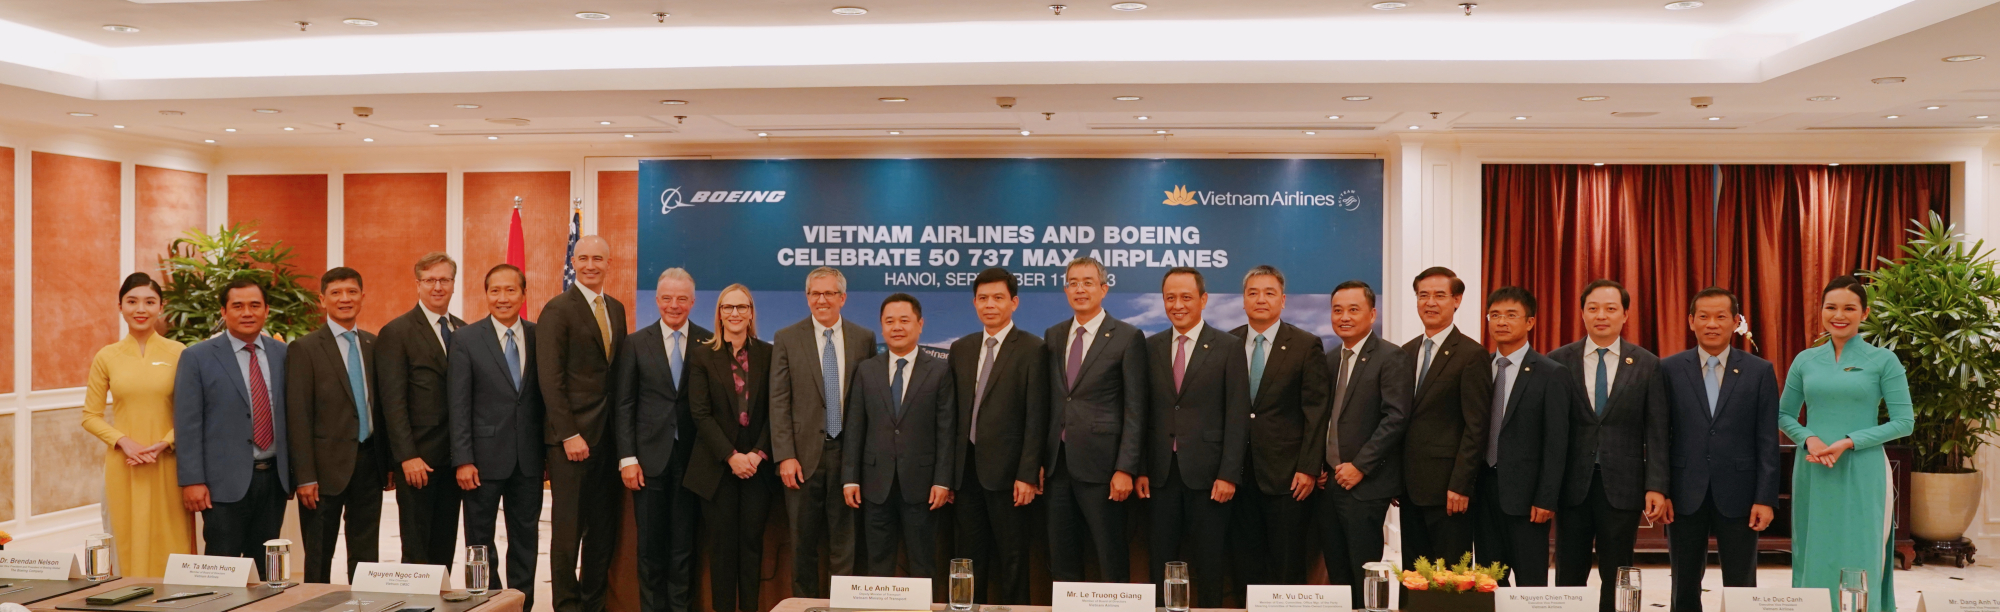 boeing ban 50 may bay 737 max cho vietnam airlines hinh 3